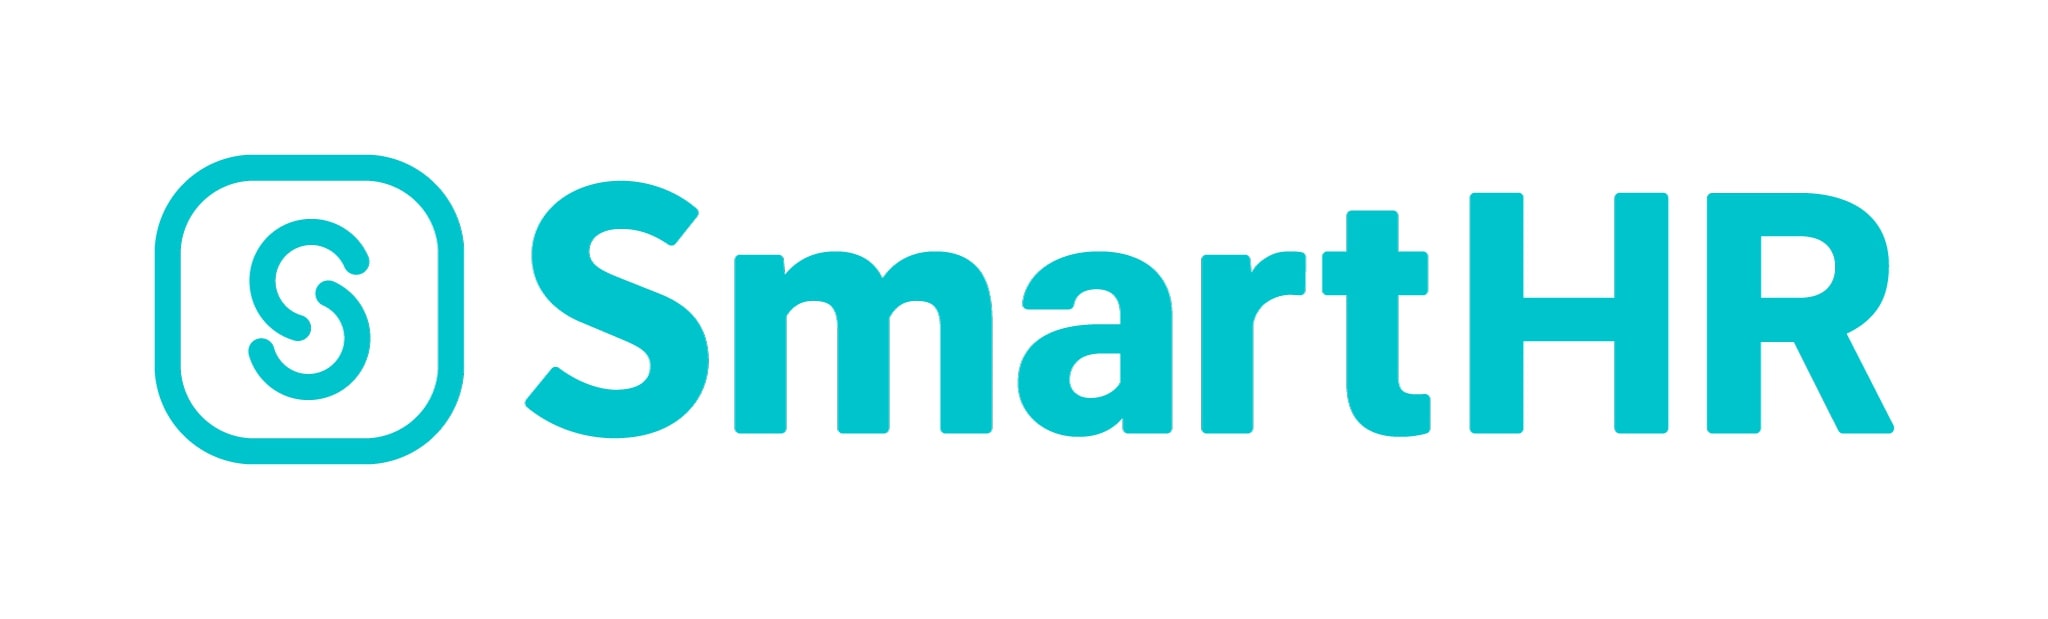 株式会社SmartHR / SmartHR, Inc.